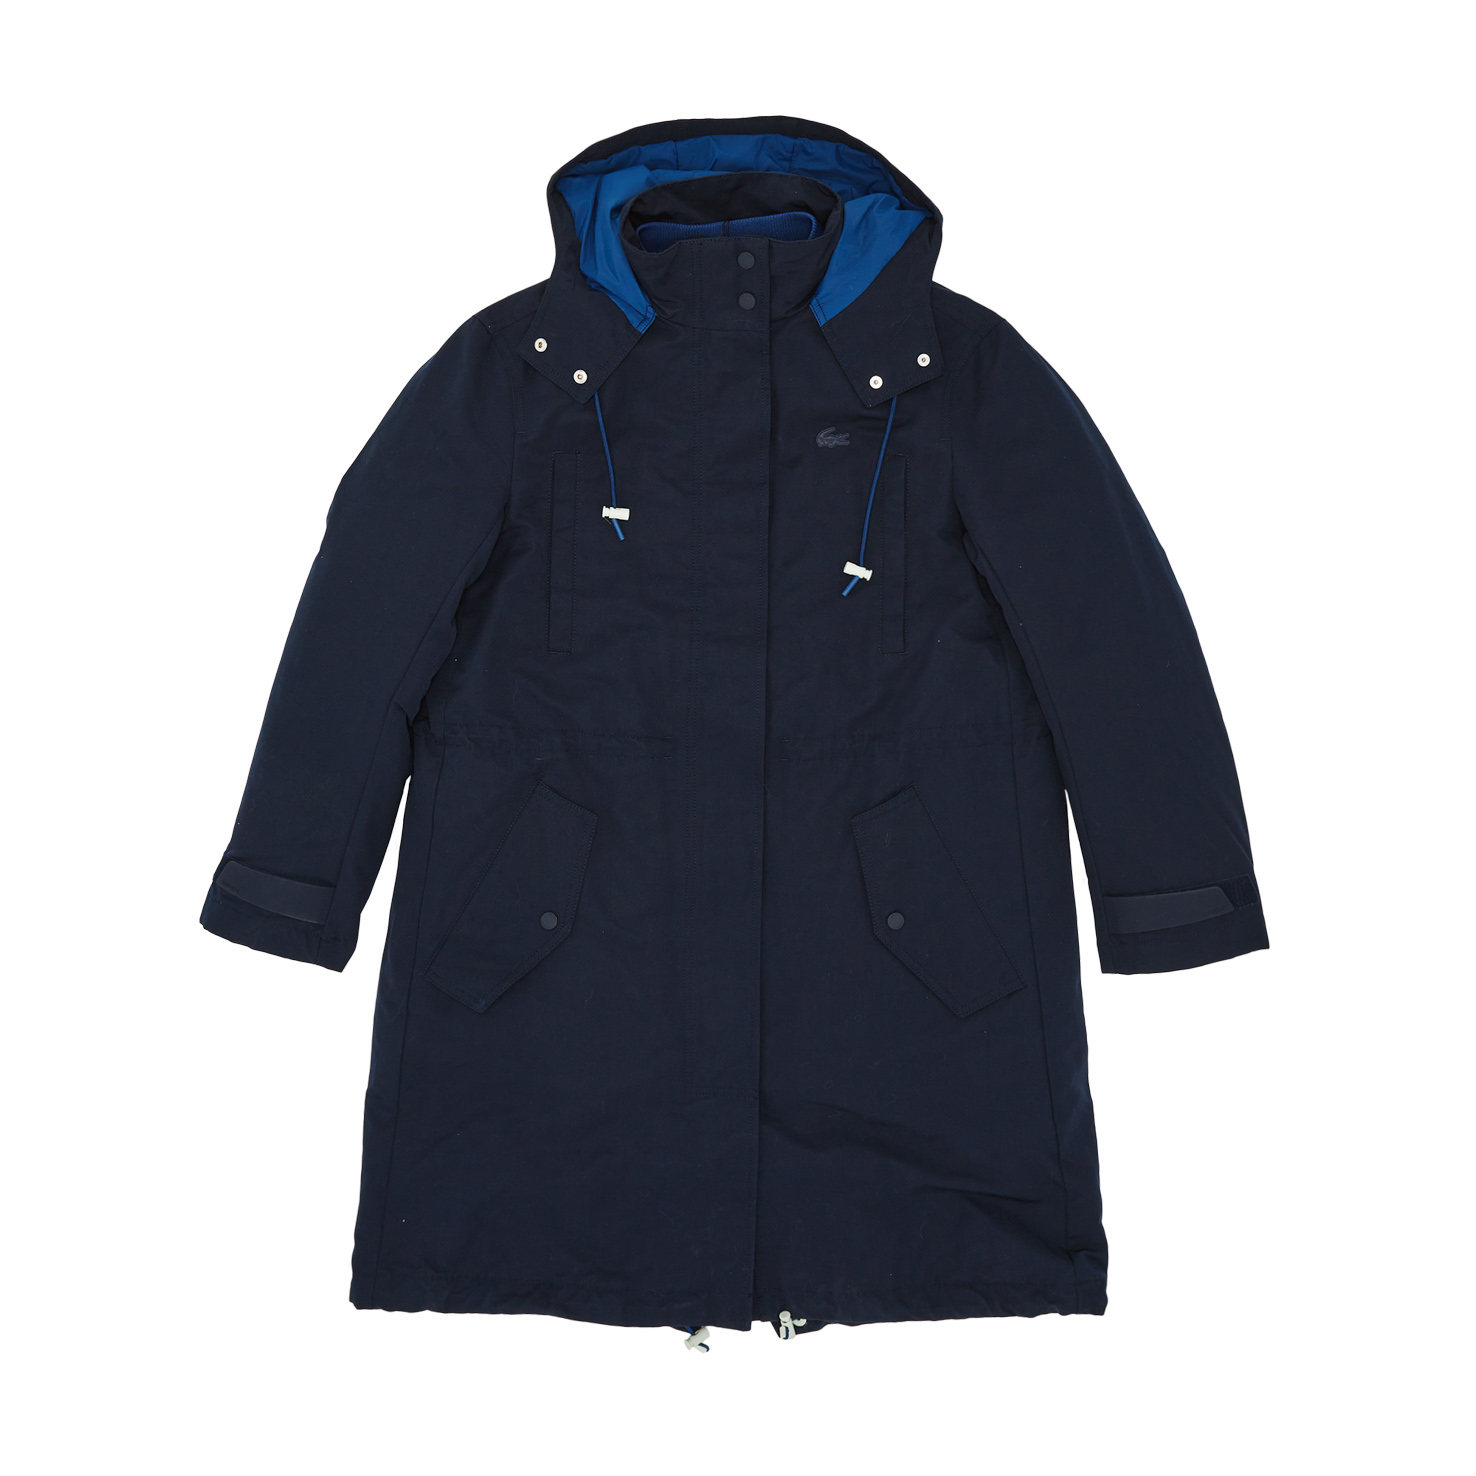 Куртка Lacoste синего цвета